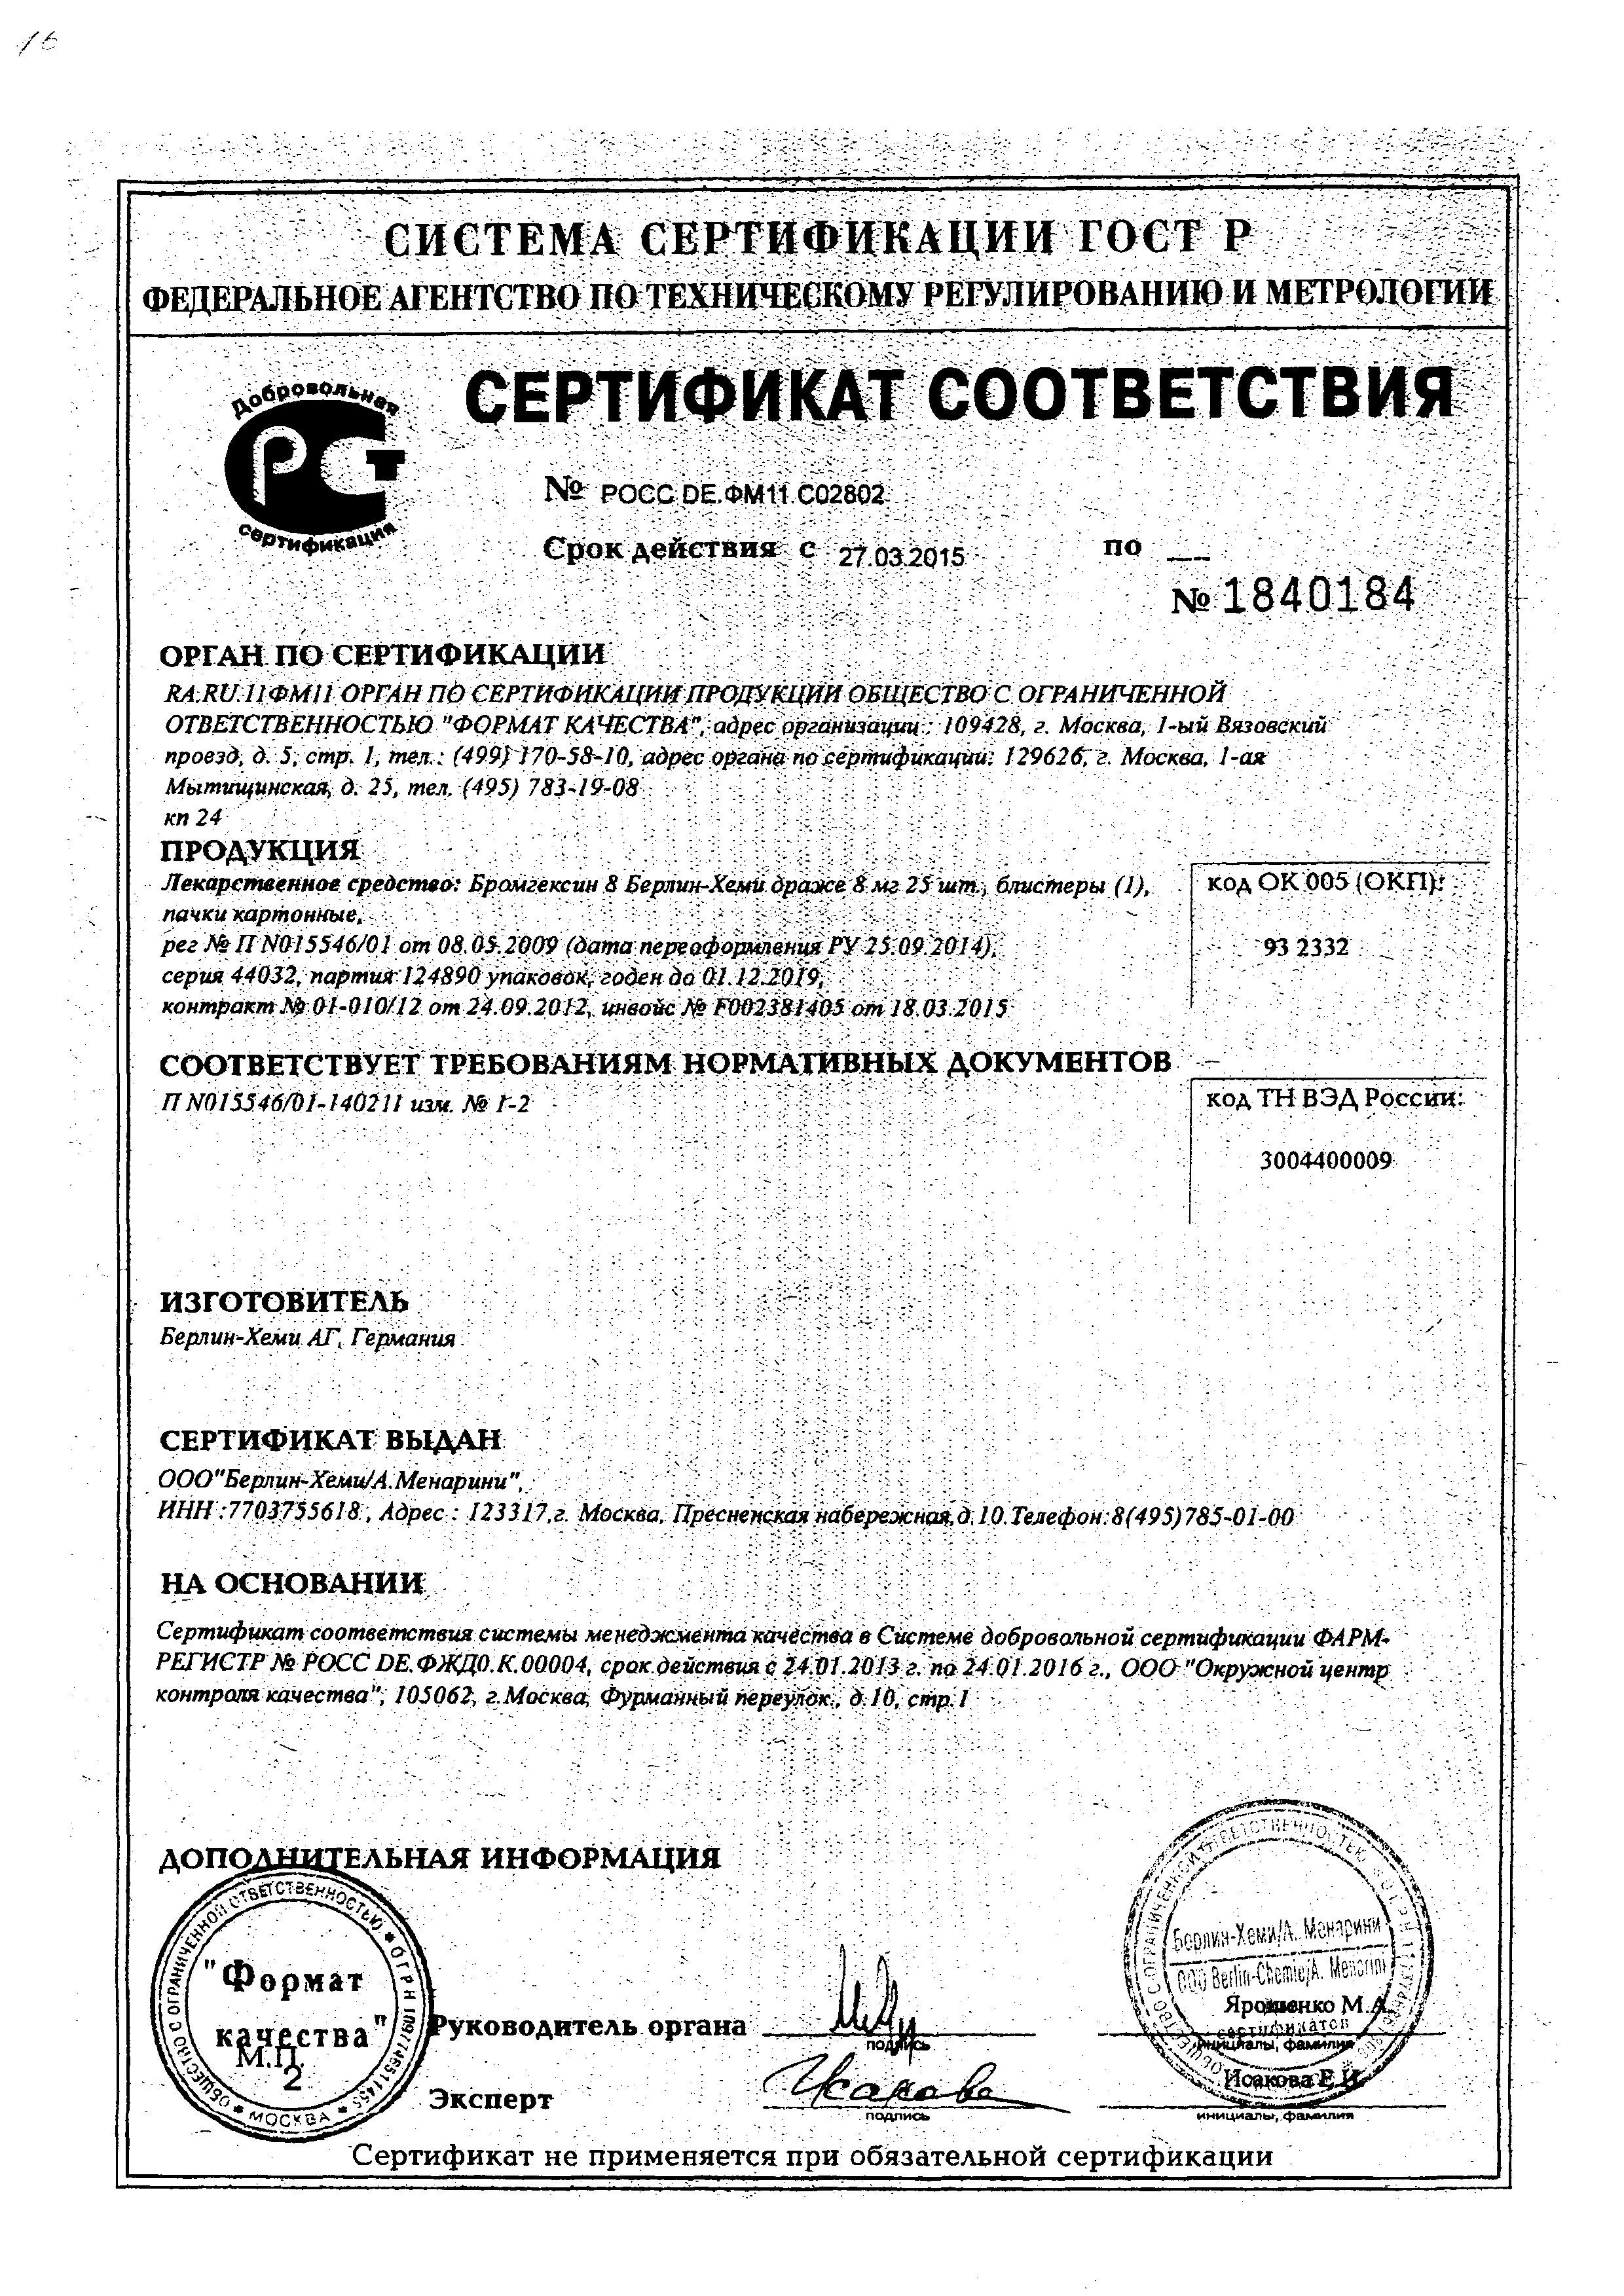 Бромгексин 8 Берлин-Хеми сертификат